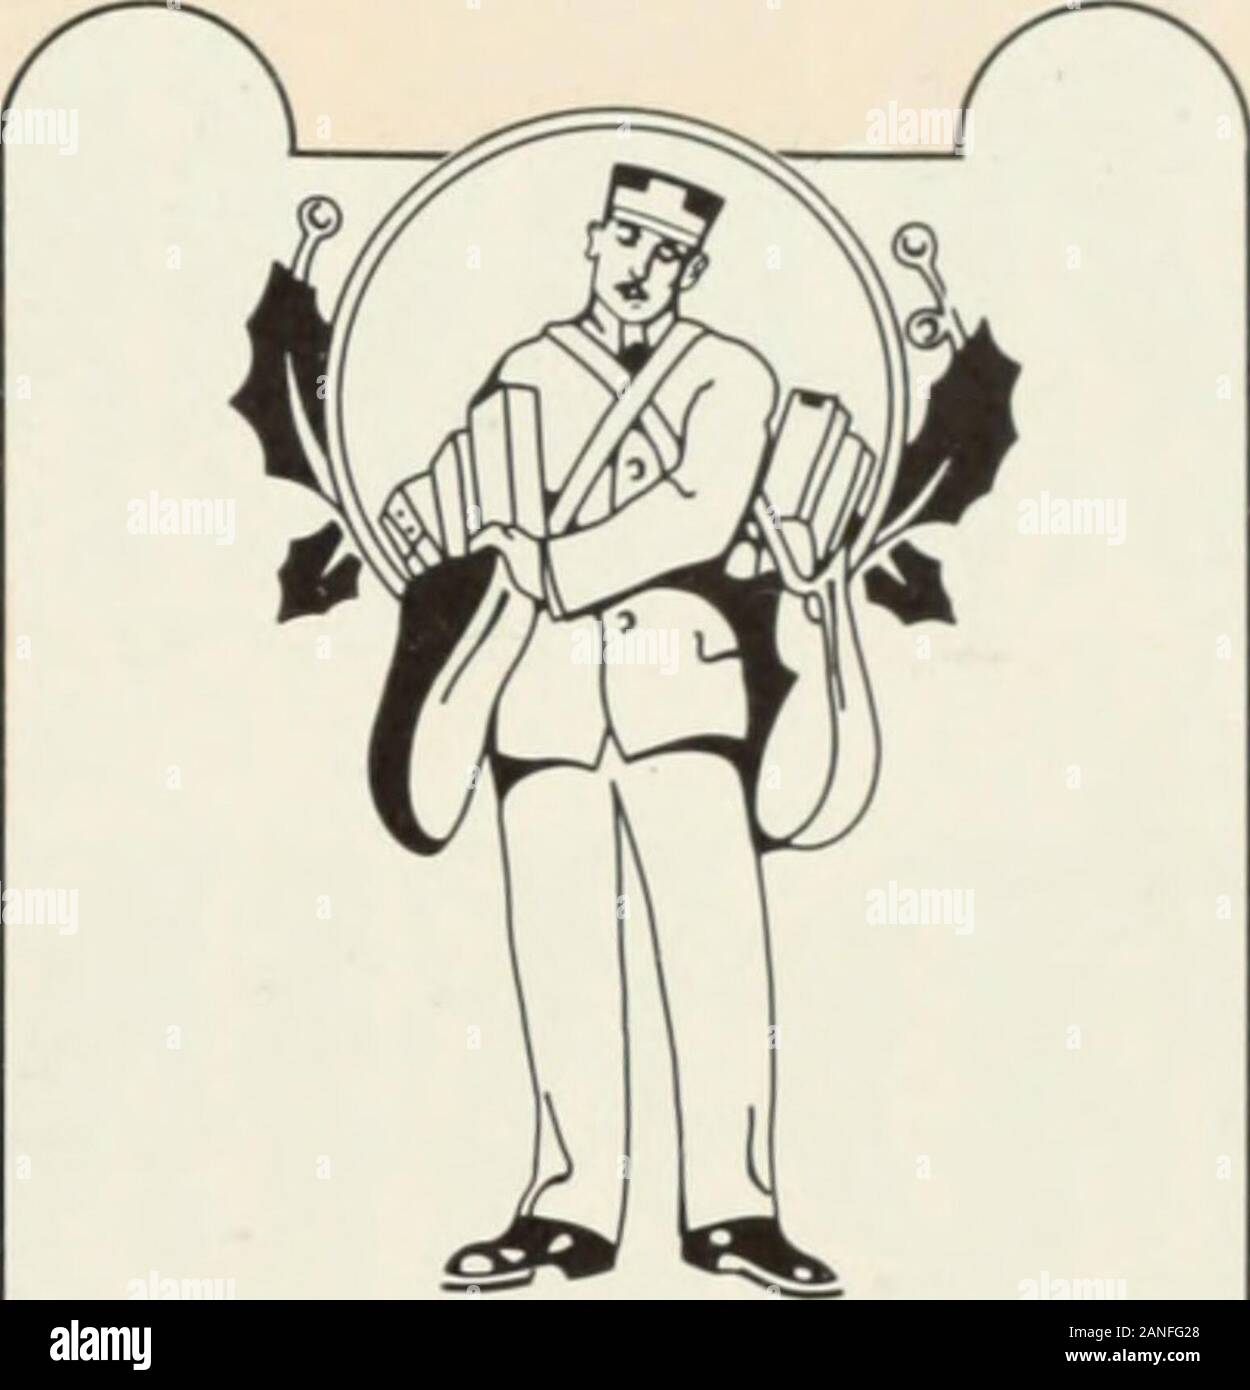 American Muster Buch der Art Styles: Gesamtkatalog der Druckmaschinen- und Druckerzubehör, 1912. ???? £ £ £ £ £ £?????? £ £ £ £ £ £???? £ £?? ^ Ich?*^ OB m^^?&lt; SI-OB? O SSI;, &lt;! Ich ^1^ii?&lt; isii?. n Grand Ball schreiben CarriersMutual BenefitAssociation, Inc. RICHFIELD HALLE Eightti und Elm Straßen Ausic rurnisheO l) ij thellcinrirl Orrltsrfii SEPTEMBER 6. sieben OCLOCtS Tickets - $ 1,00 OFFIZIERE JAMES HILL - Präsident HUGH MINER -- Vizepräsident WALTER OTISLEO MIIRKLER. Sekretär. Trca. siirer. r "p^j^ s^^ r S lVc.. Rul.. r "Slra Uimurv-Oriu 581 liiUiiJ U.. rUir Nr. 1 J7U irutut lloluUj Uit. Stockfoto